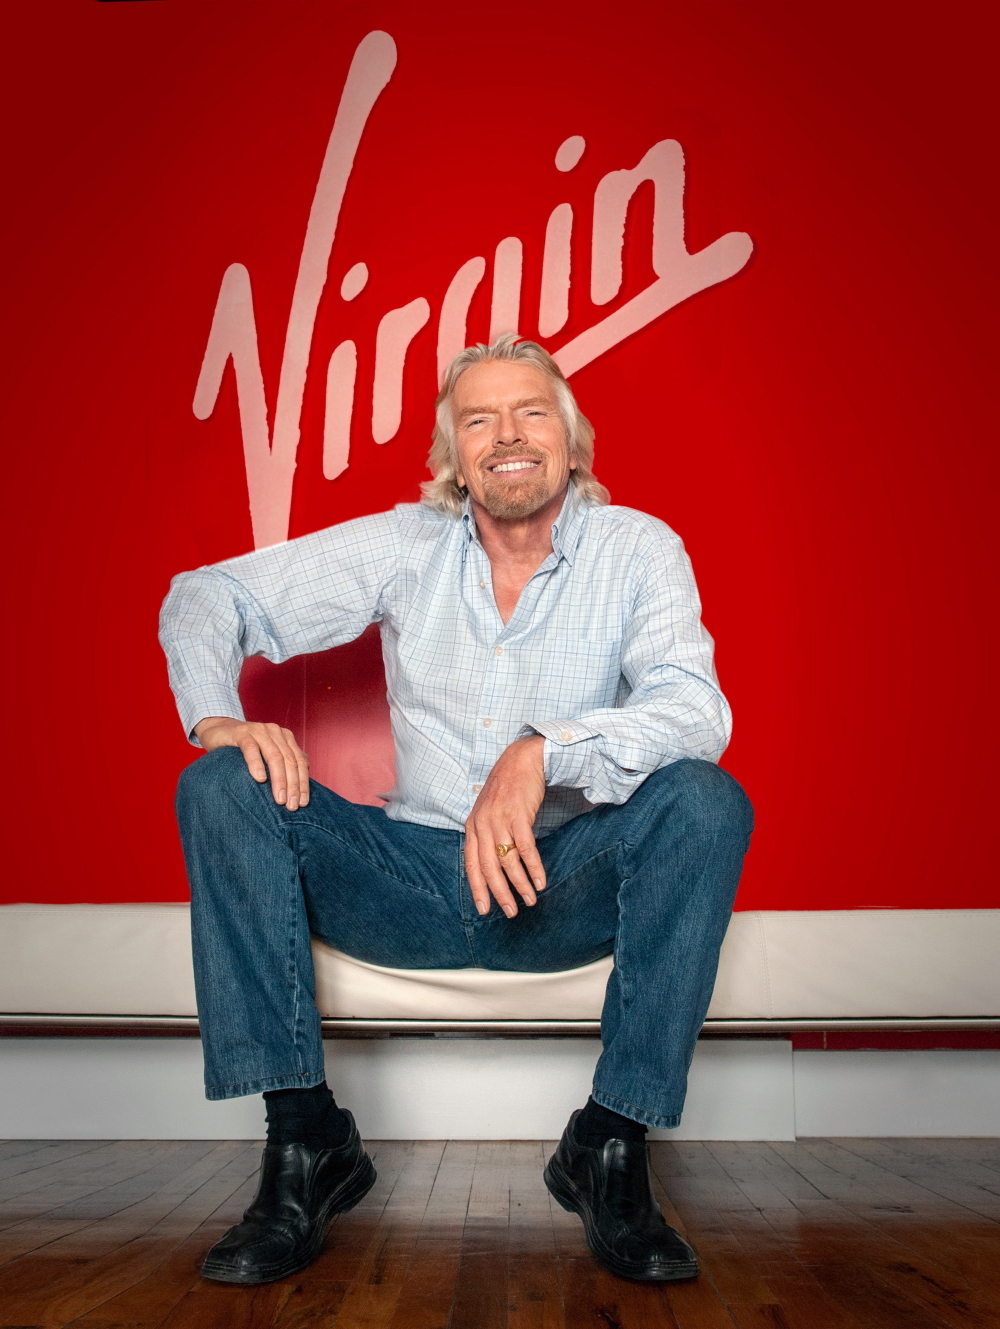 Richard Branson (founder of Virgin Group) by Bill Bernstein